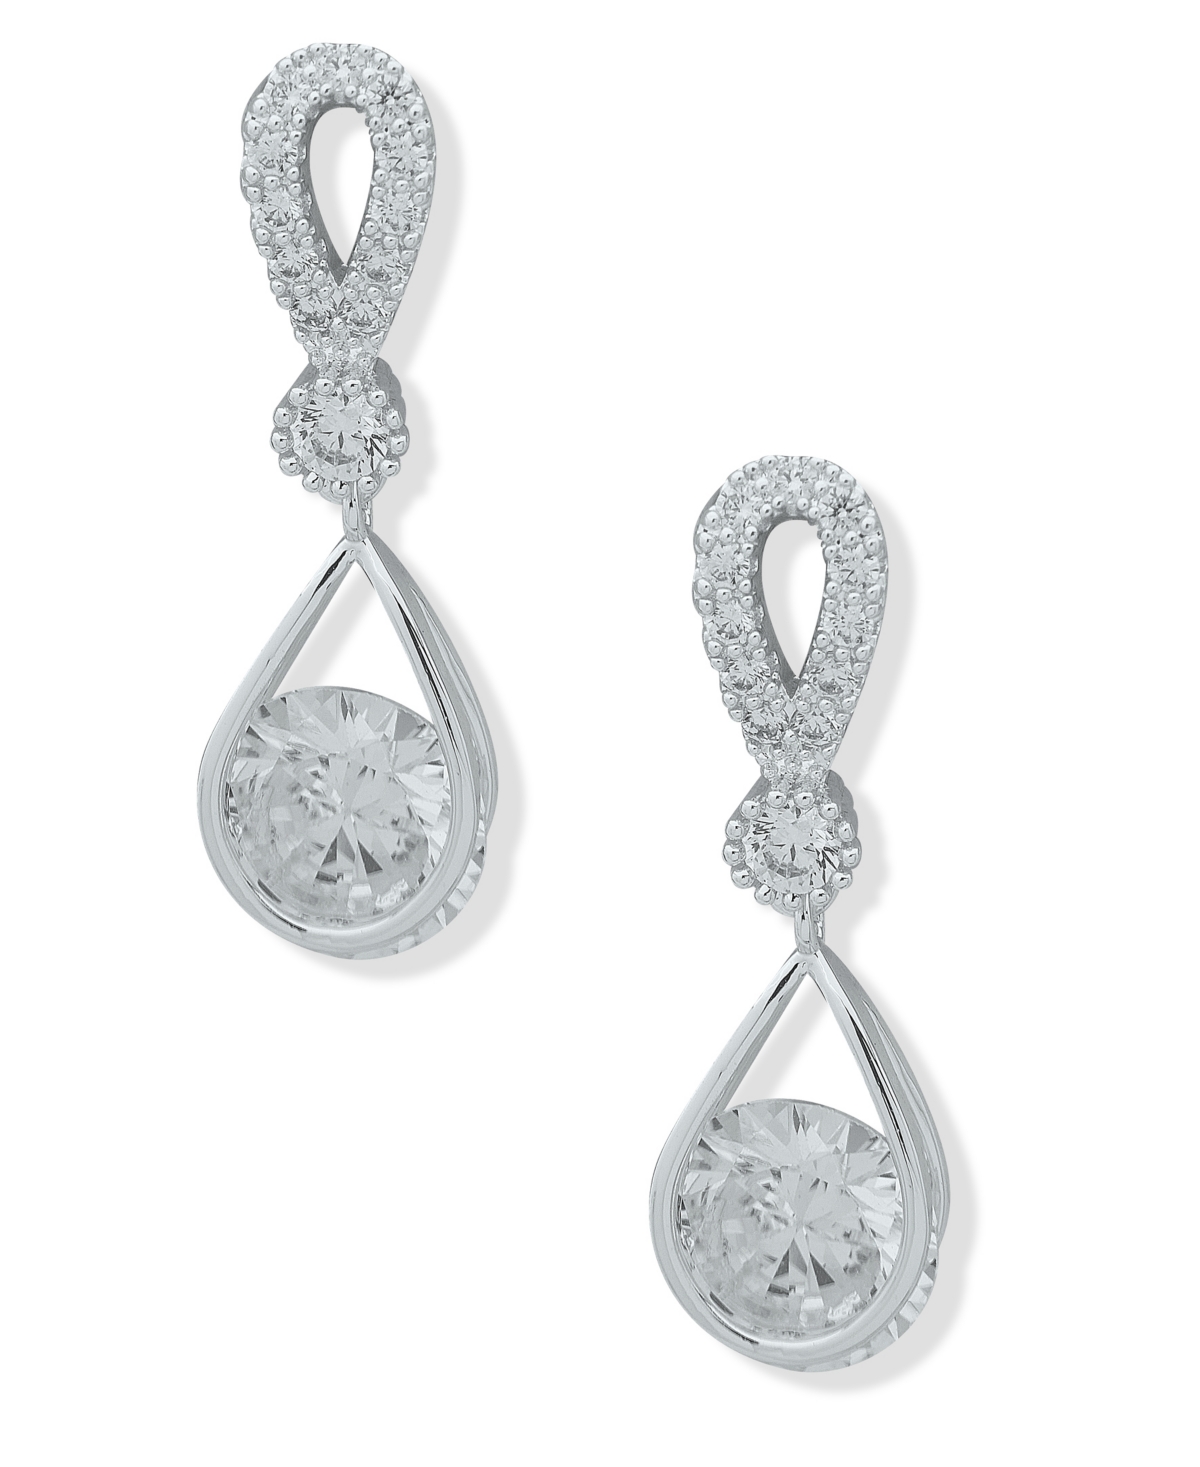 Anne Klein Silver-tone Cubic Zirconia Tear-shape Drop Earrings In Crystal